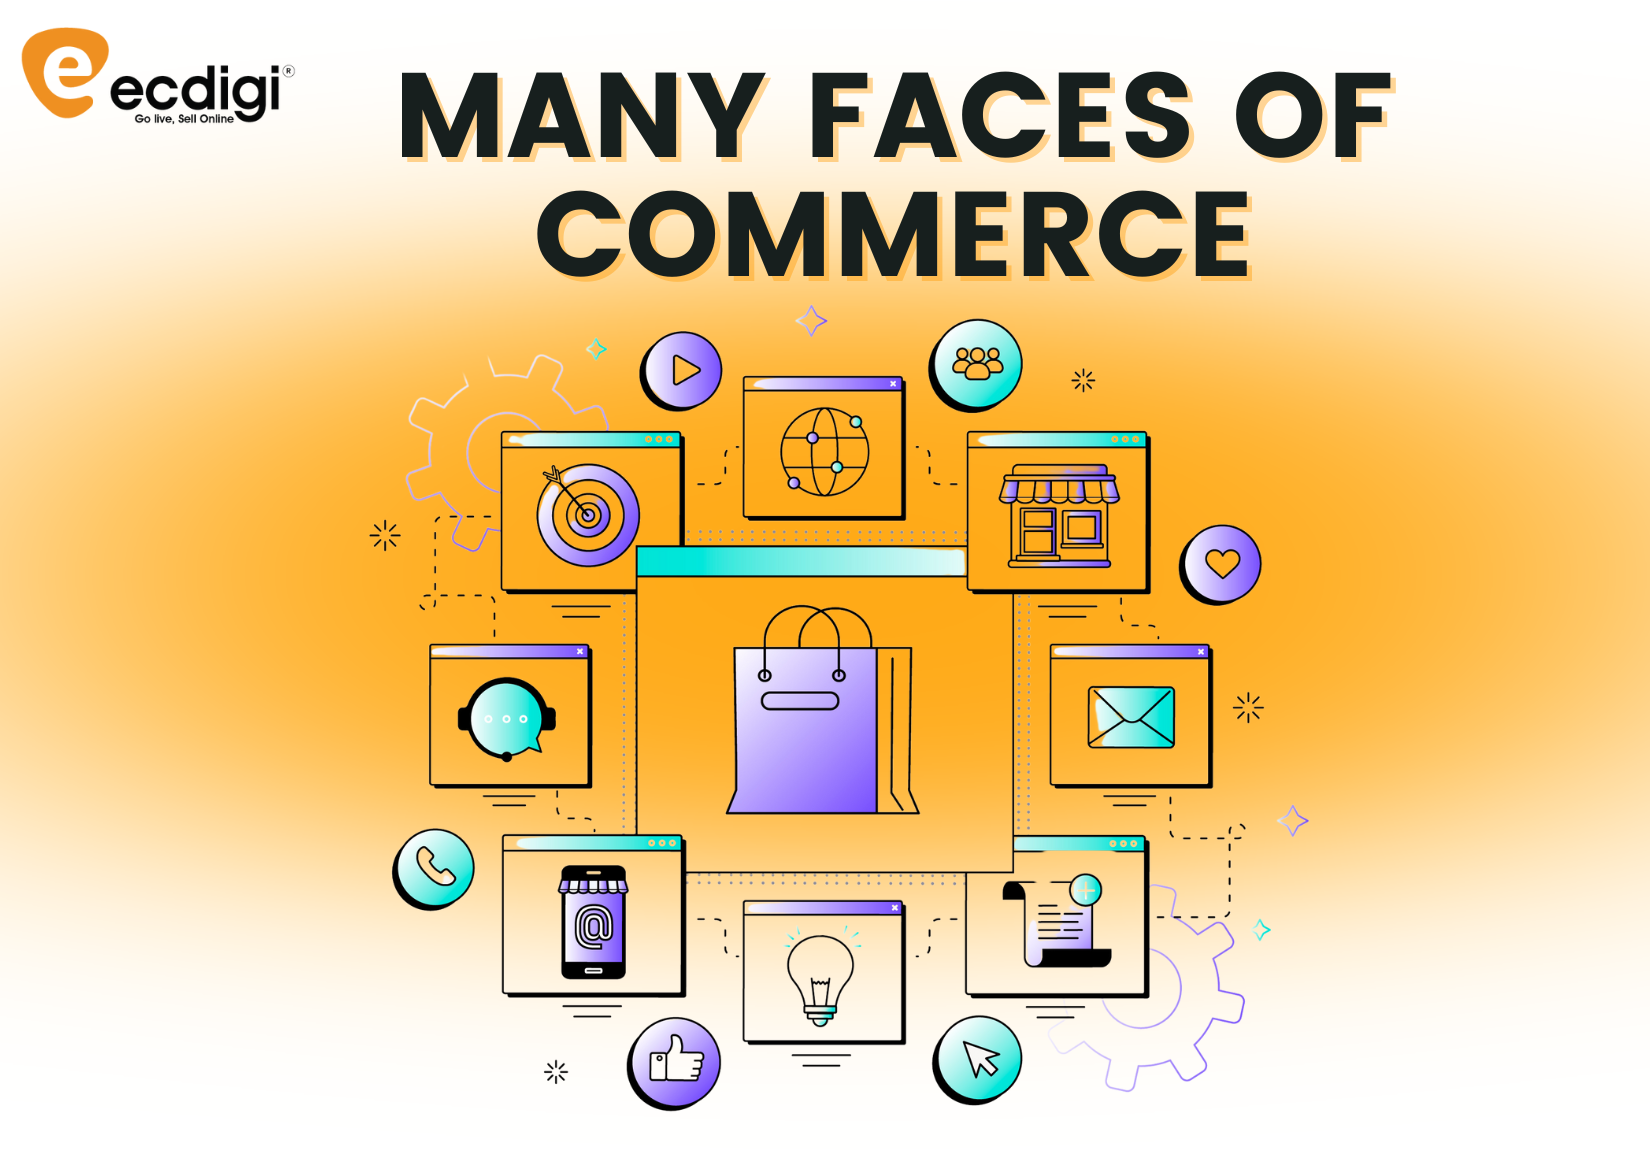 e-Commerce Platform for Small Business, e-Commerce Platform for Small Business in India